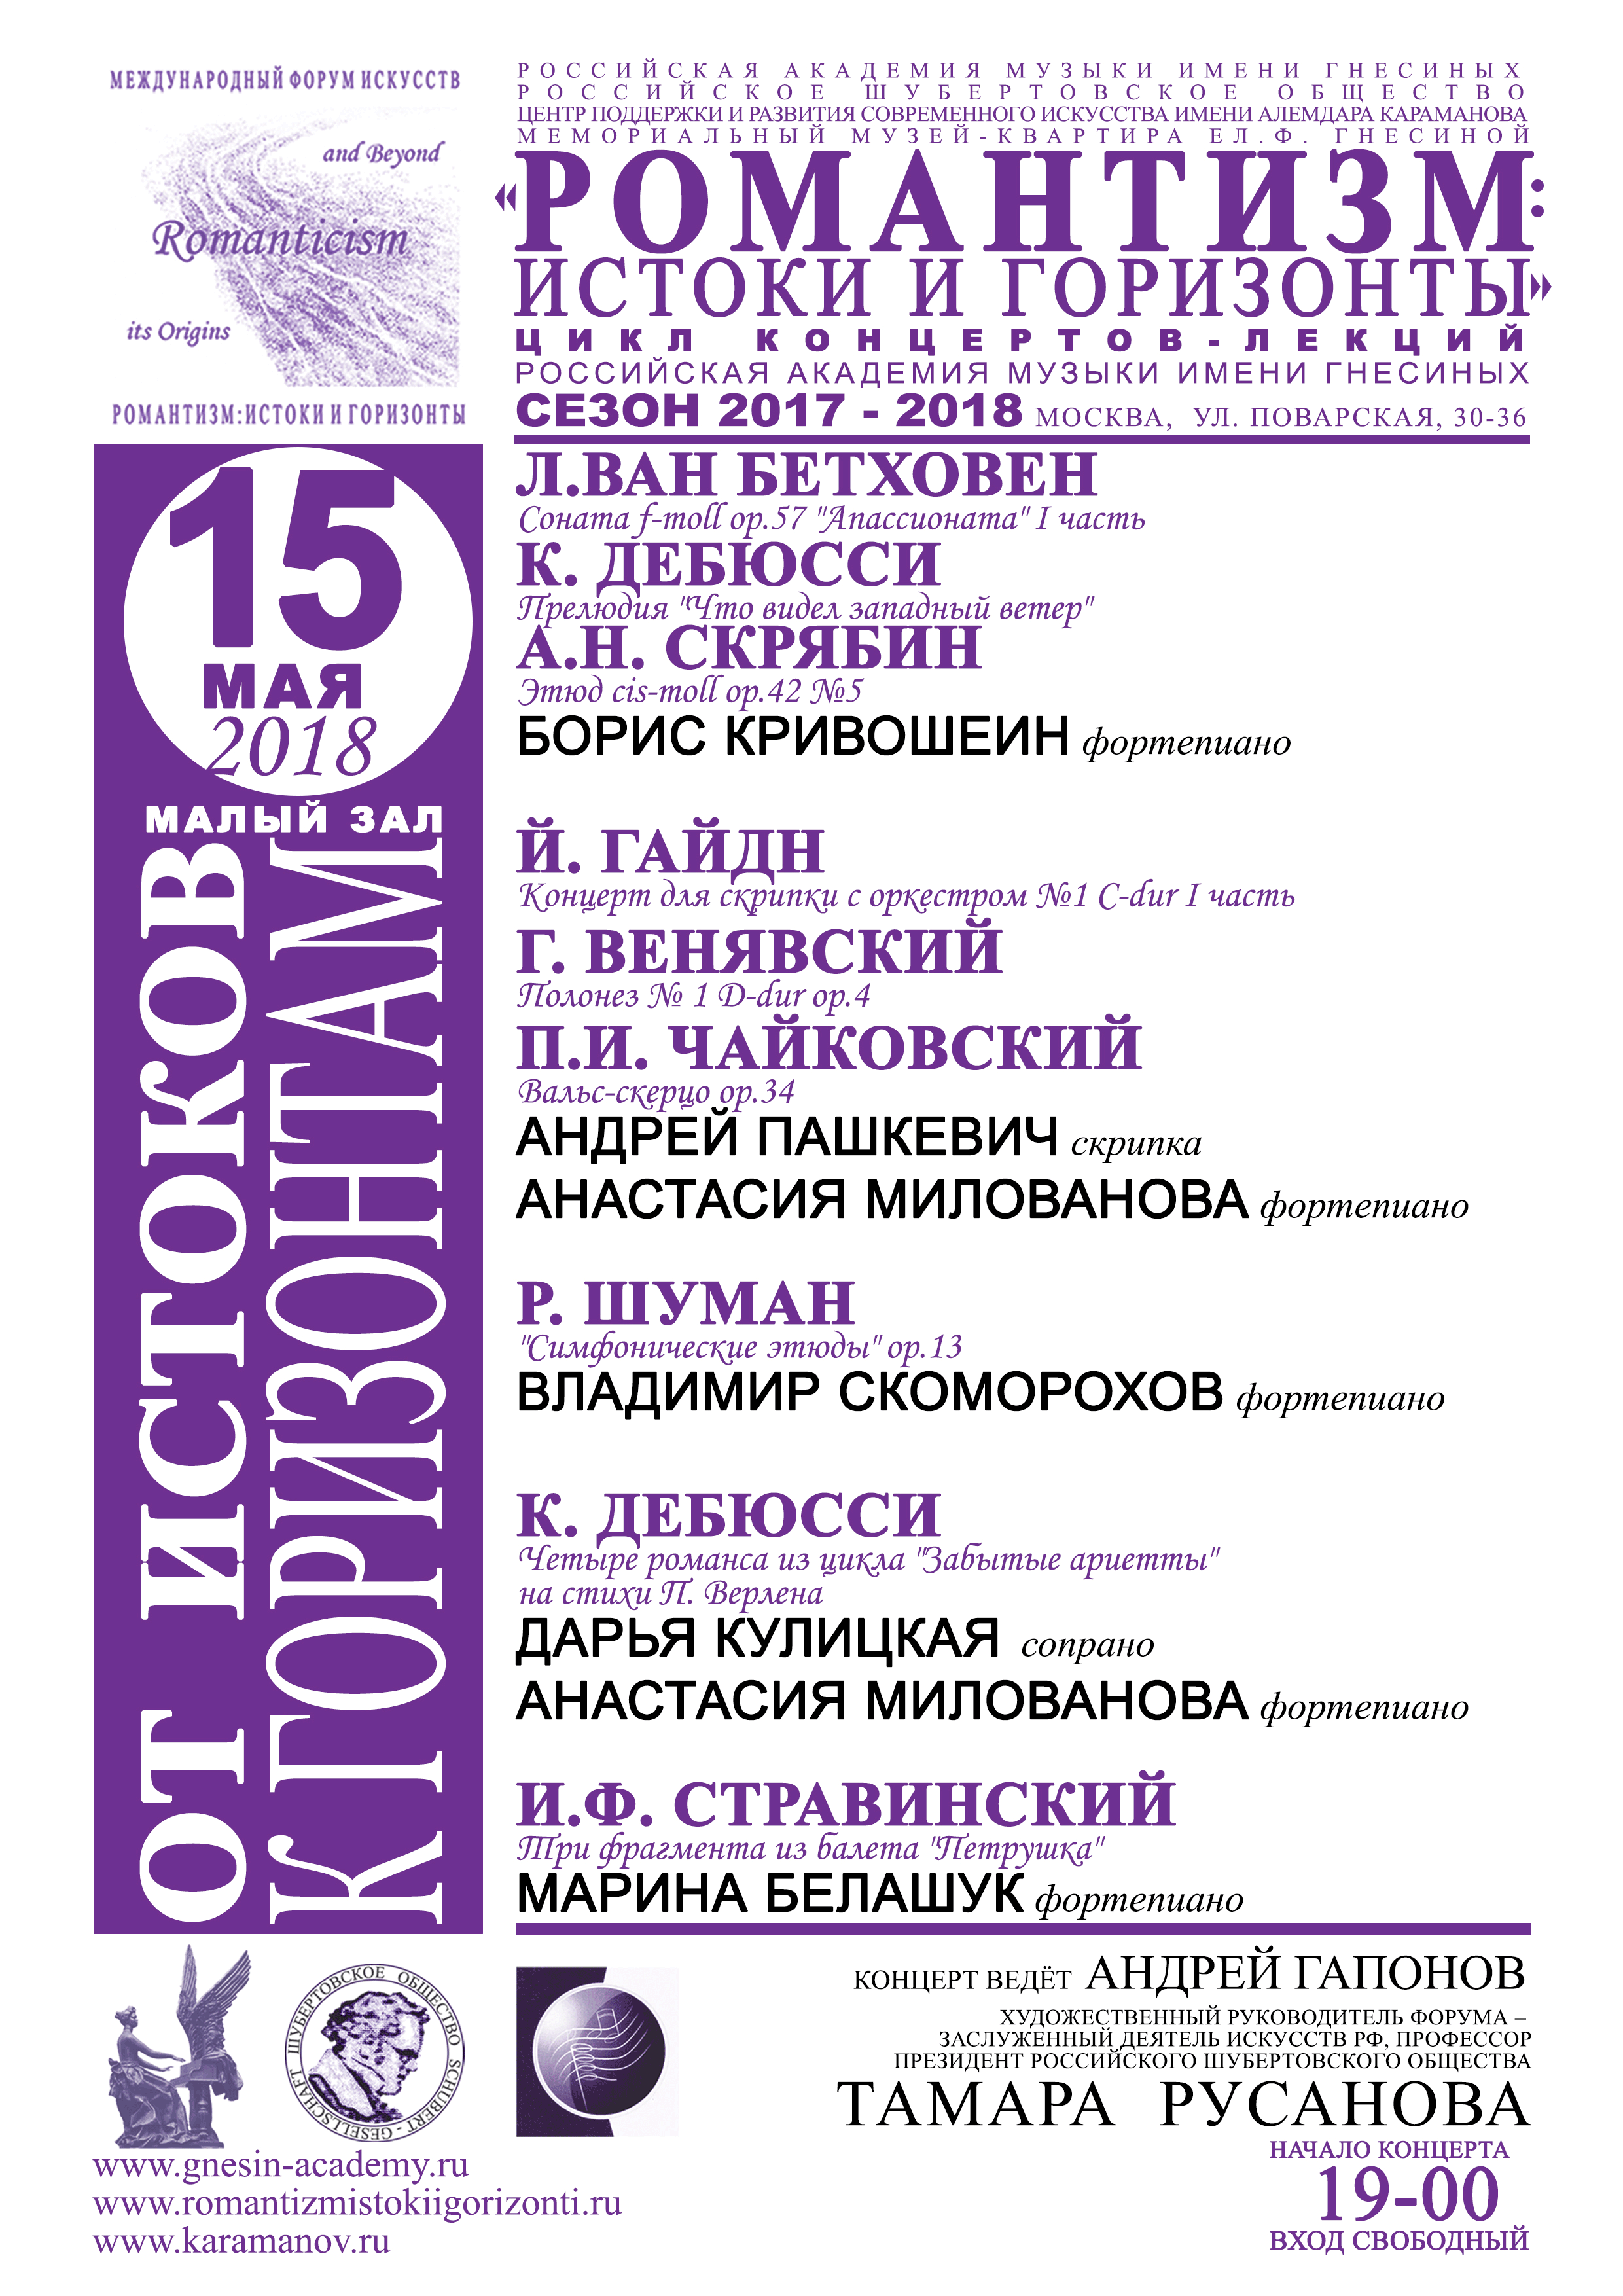 15 мая 2018 концерт-лекция "ОТ ИСТОКОВ К ГОРИЗОНТАМ"